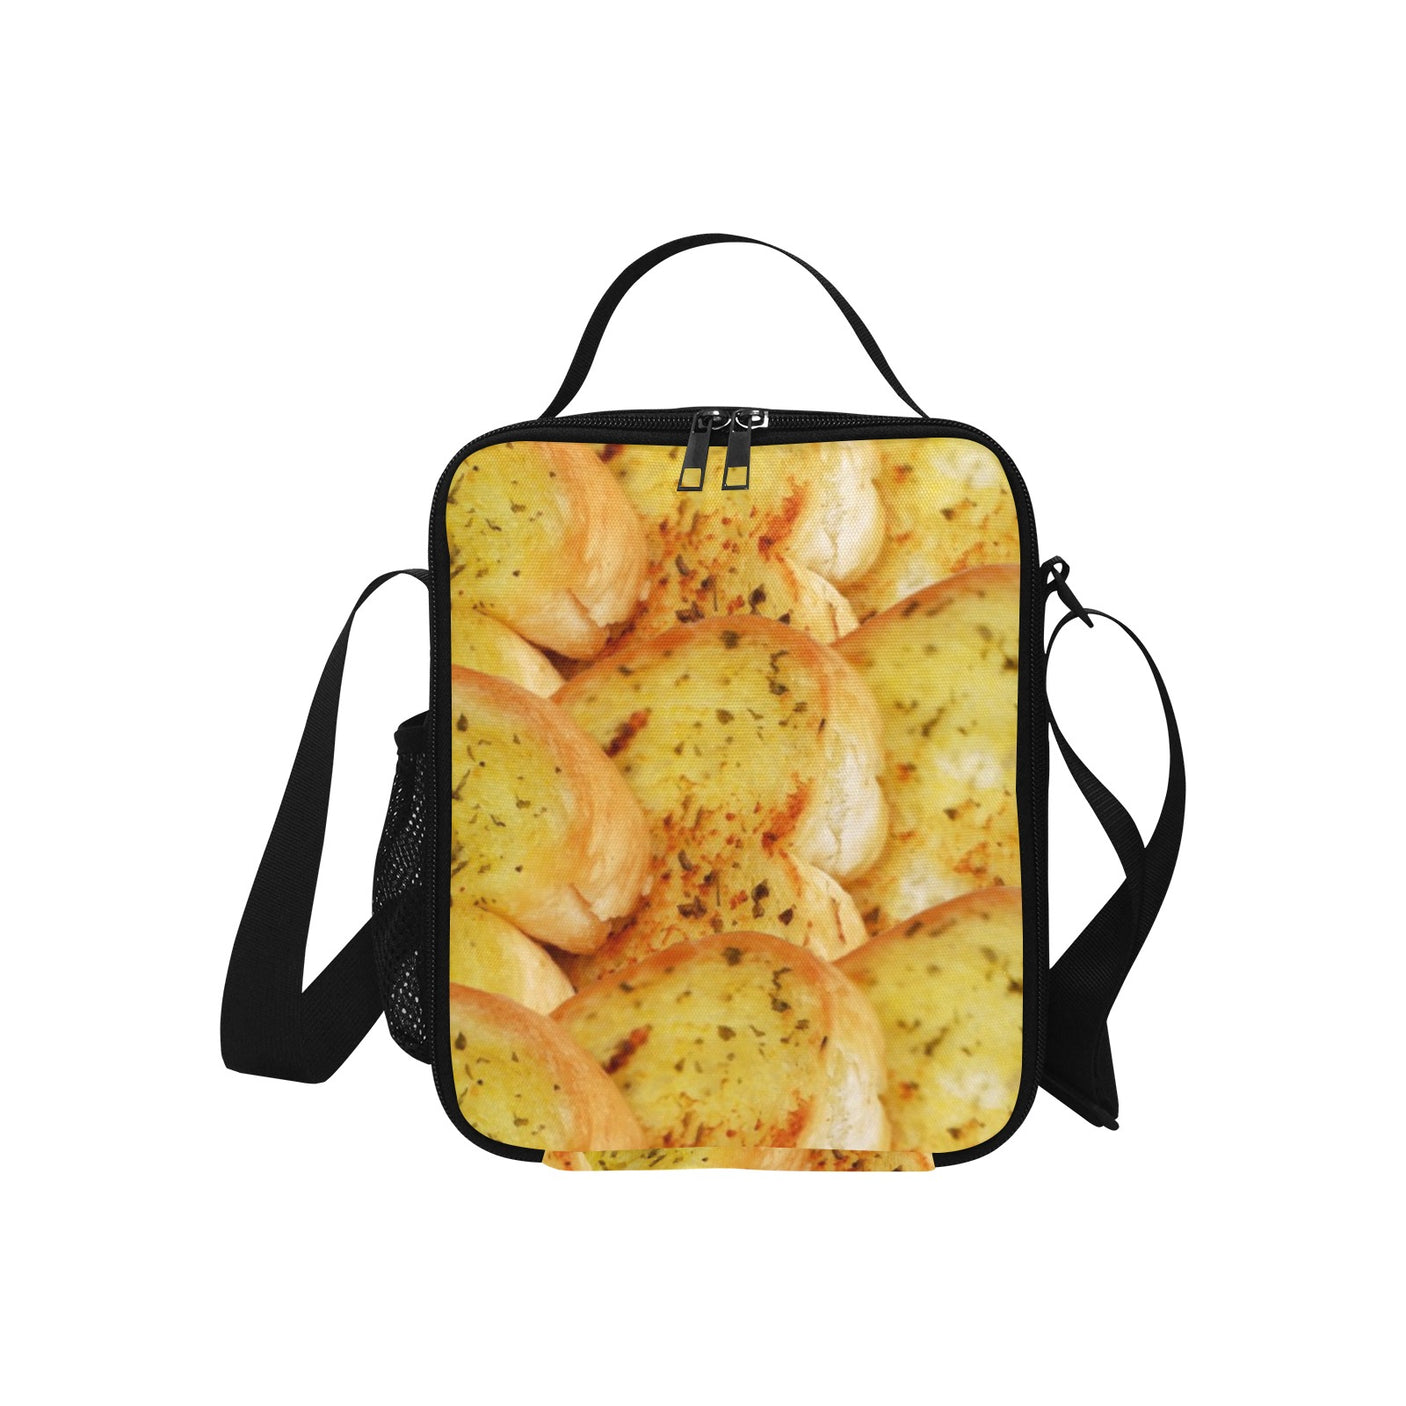 Garlic Bread Lunch Box Bag